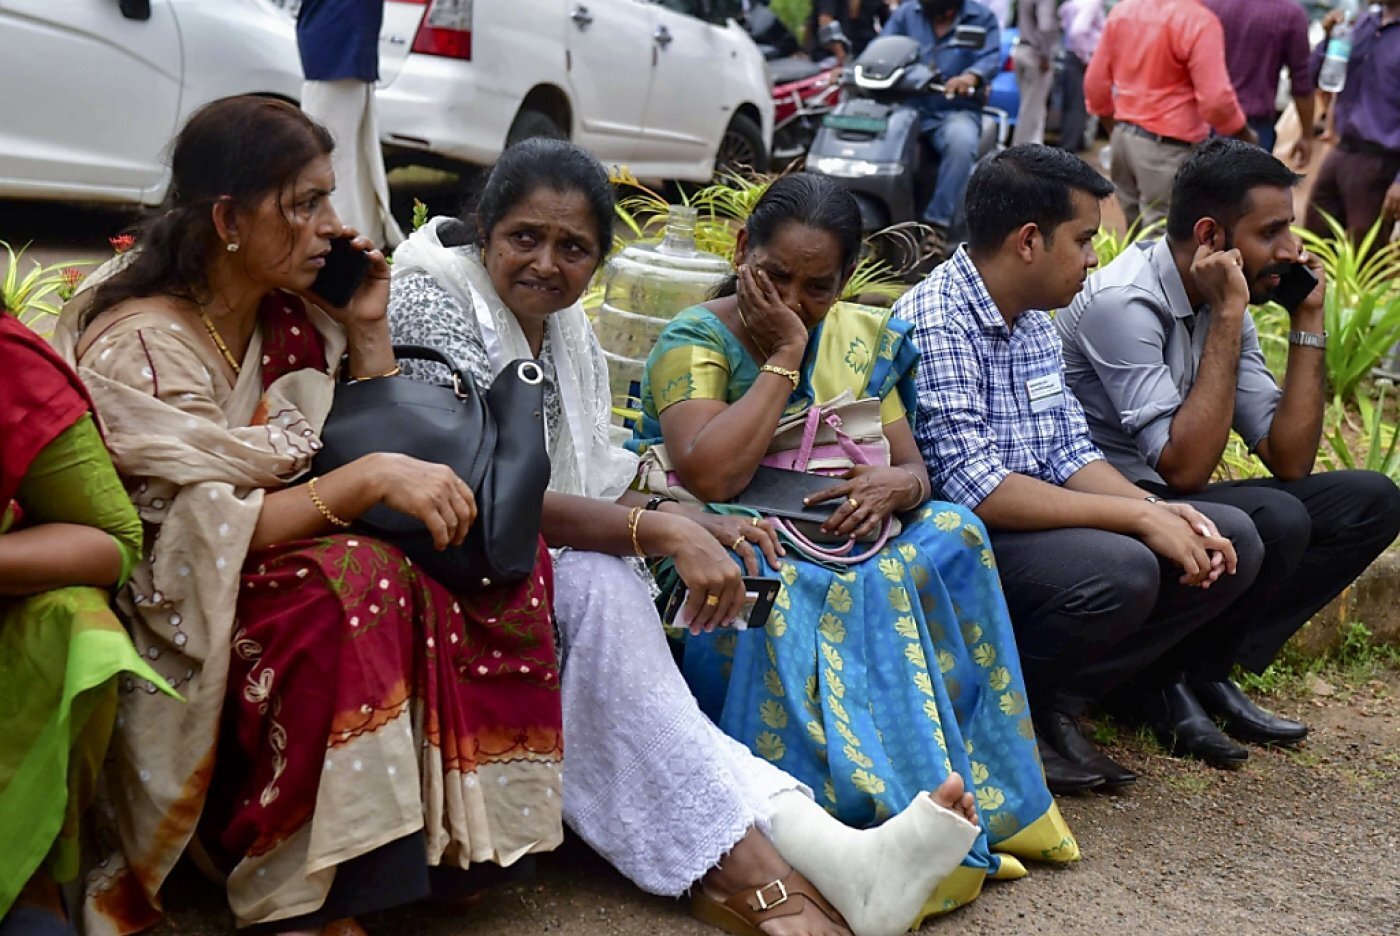  Deux morts et 35 blessés dans une explosion lors d'une prière en Inde par un ex témoin du collège central - Page 2 Thjk